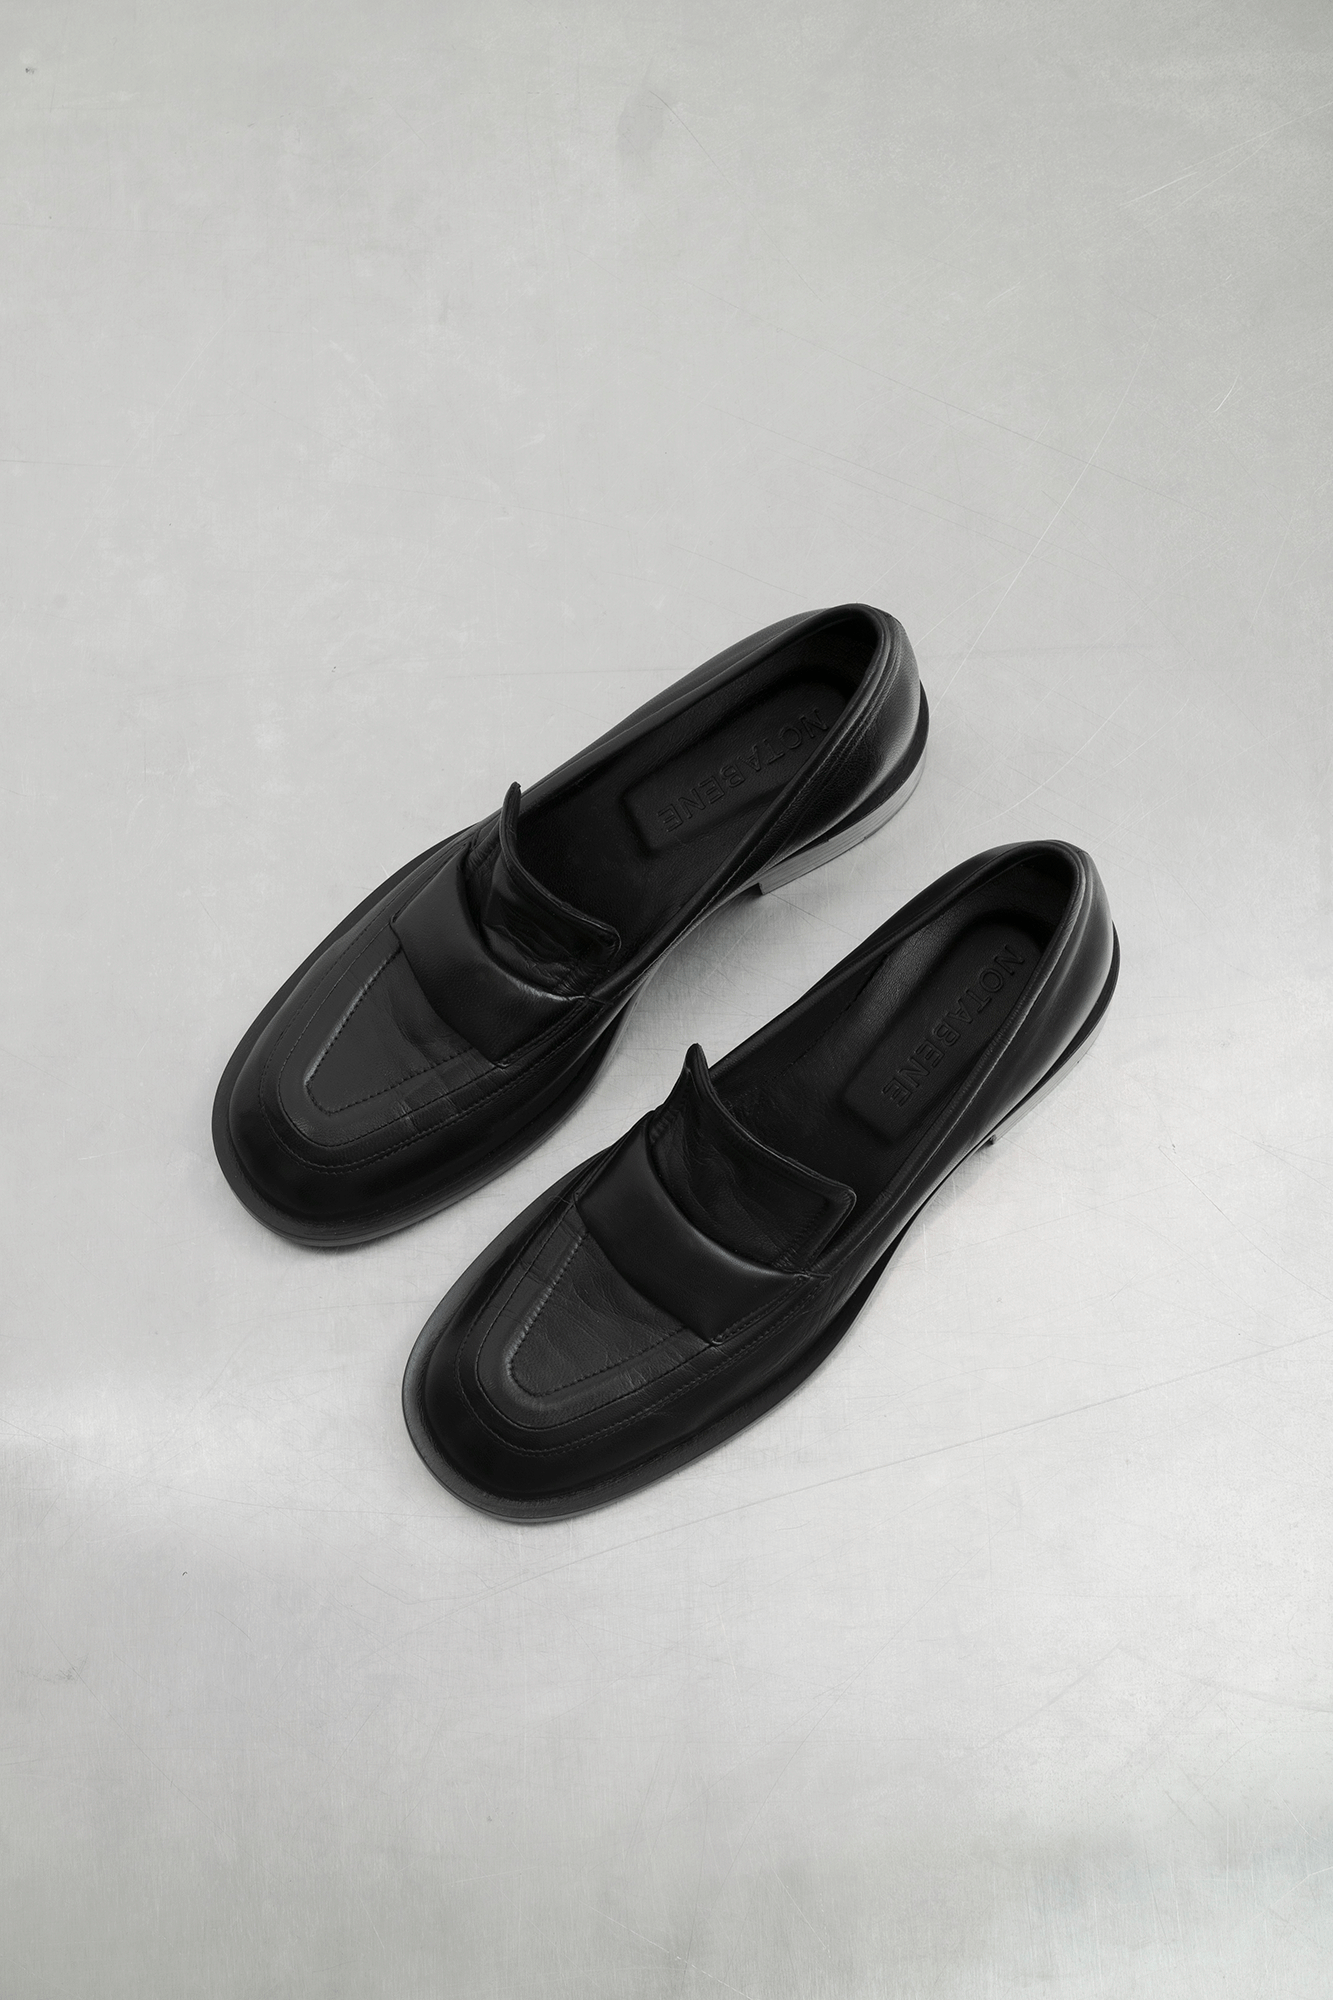 Vidar loafers, black leather